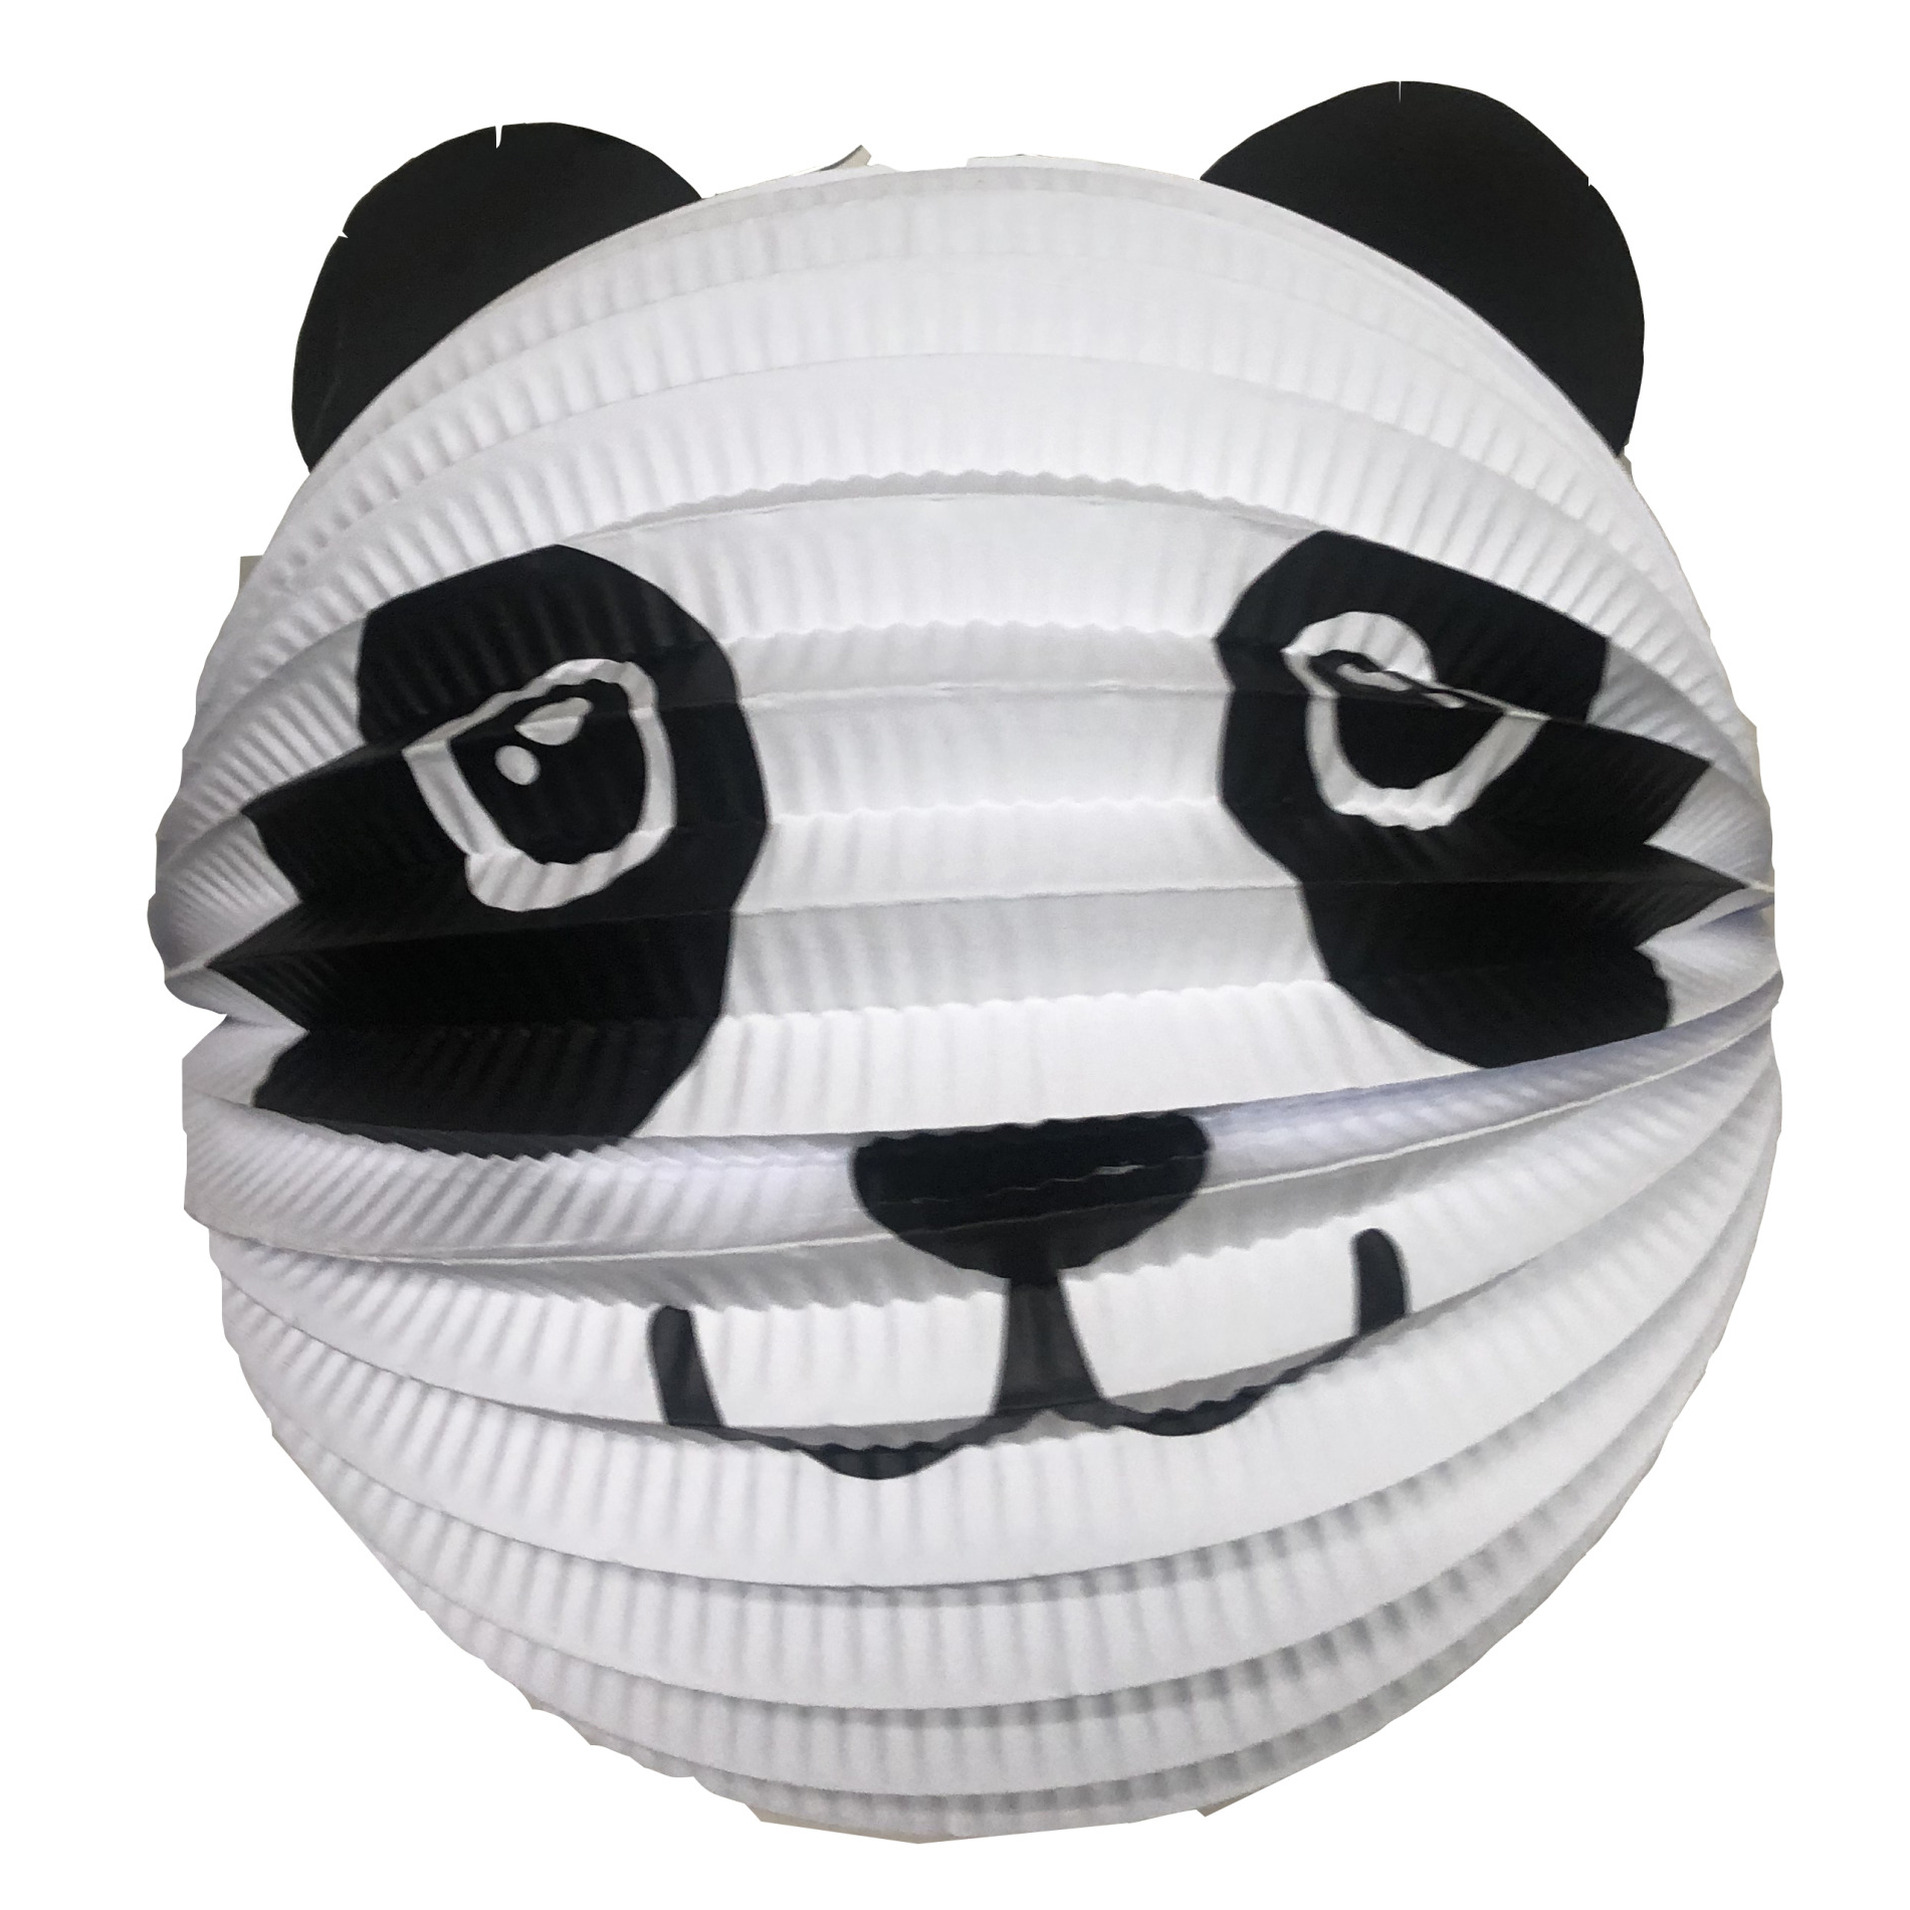 Haza Lampion panda 20 cm wit-zwart papier